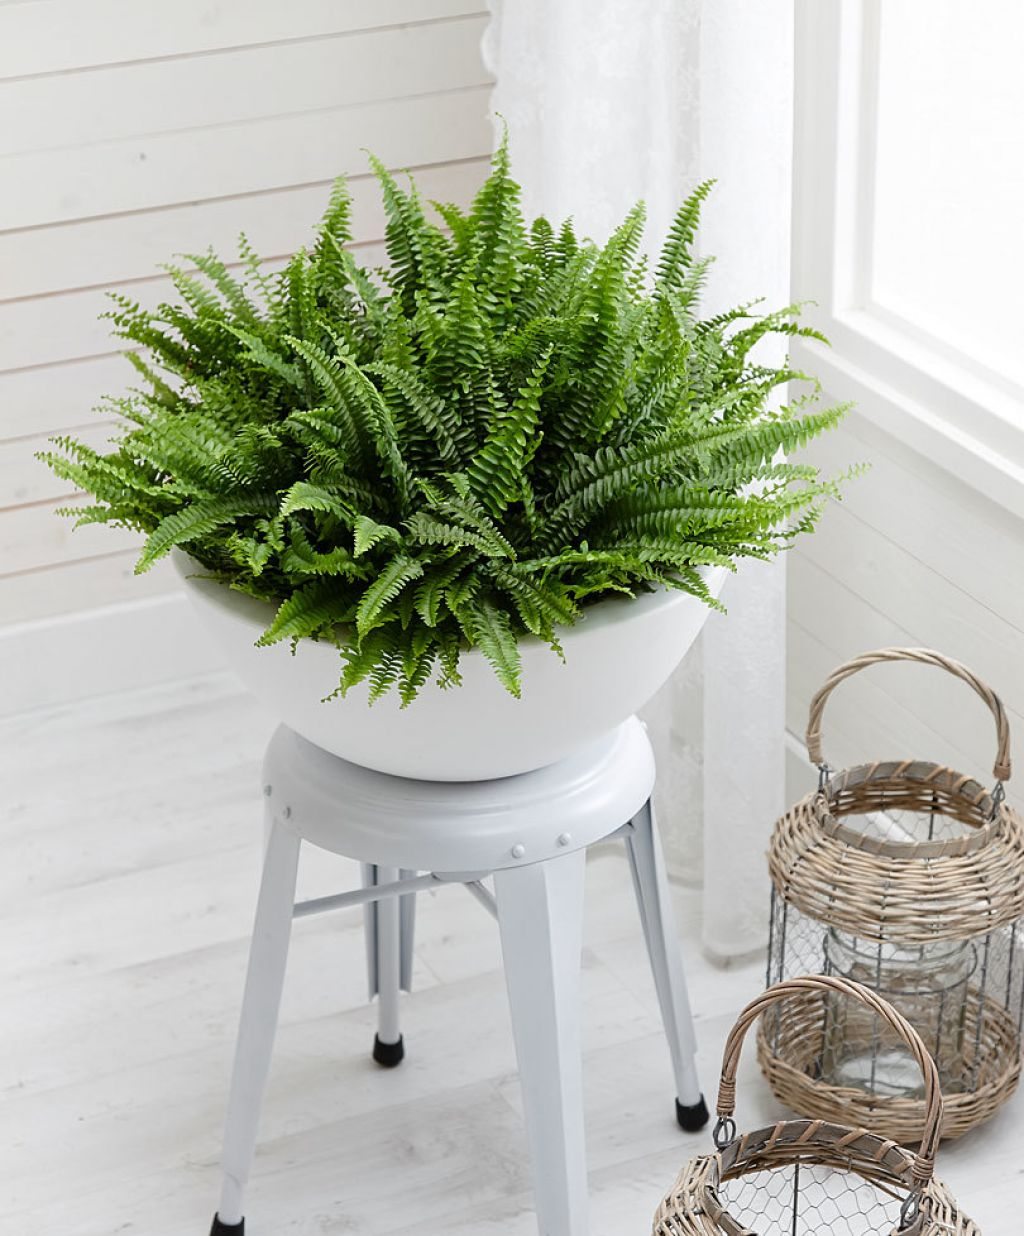 Cây dương xỉ - một loại cây phong thủy trồng trong nhà, giúp thanh lọc khí.